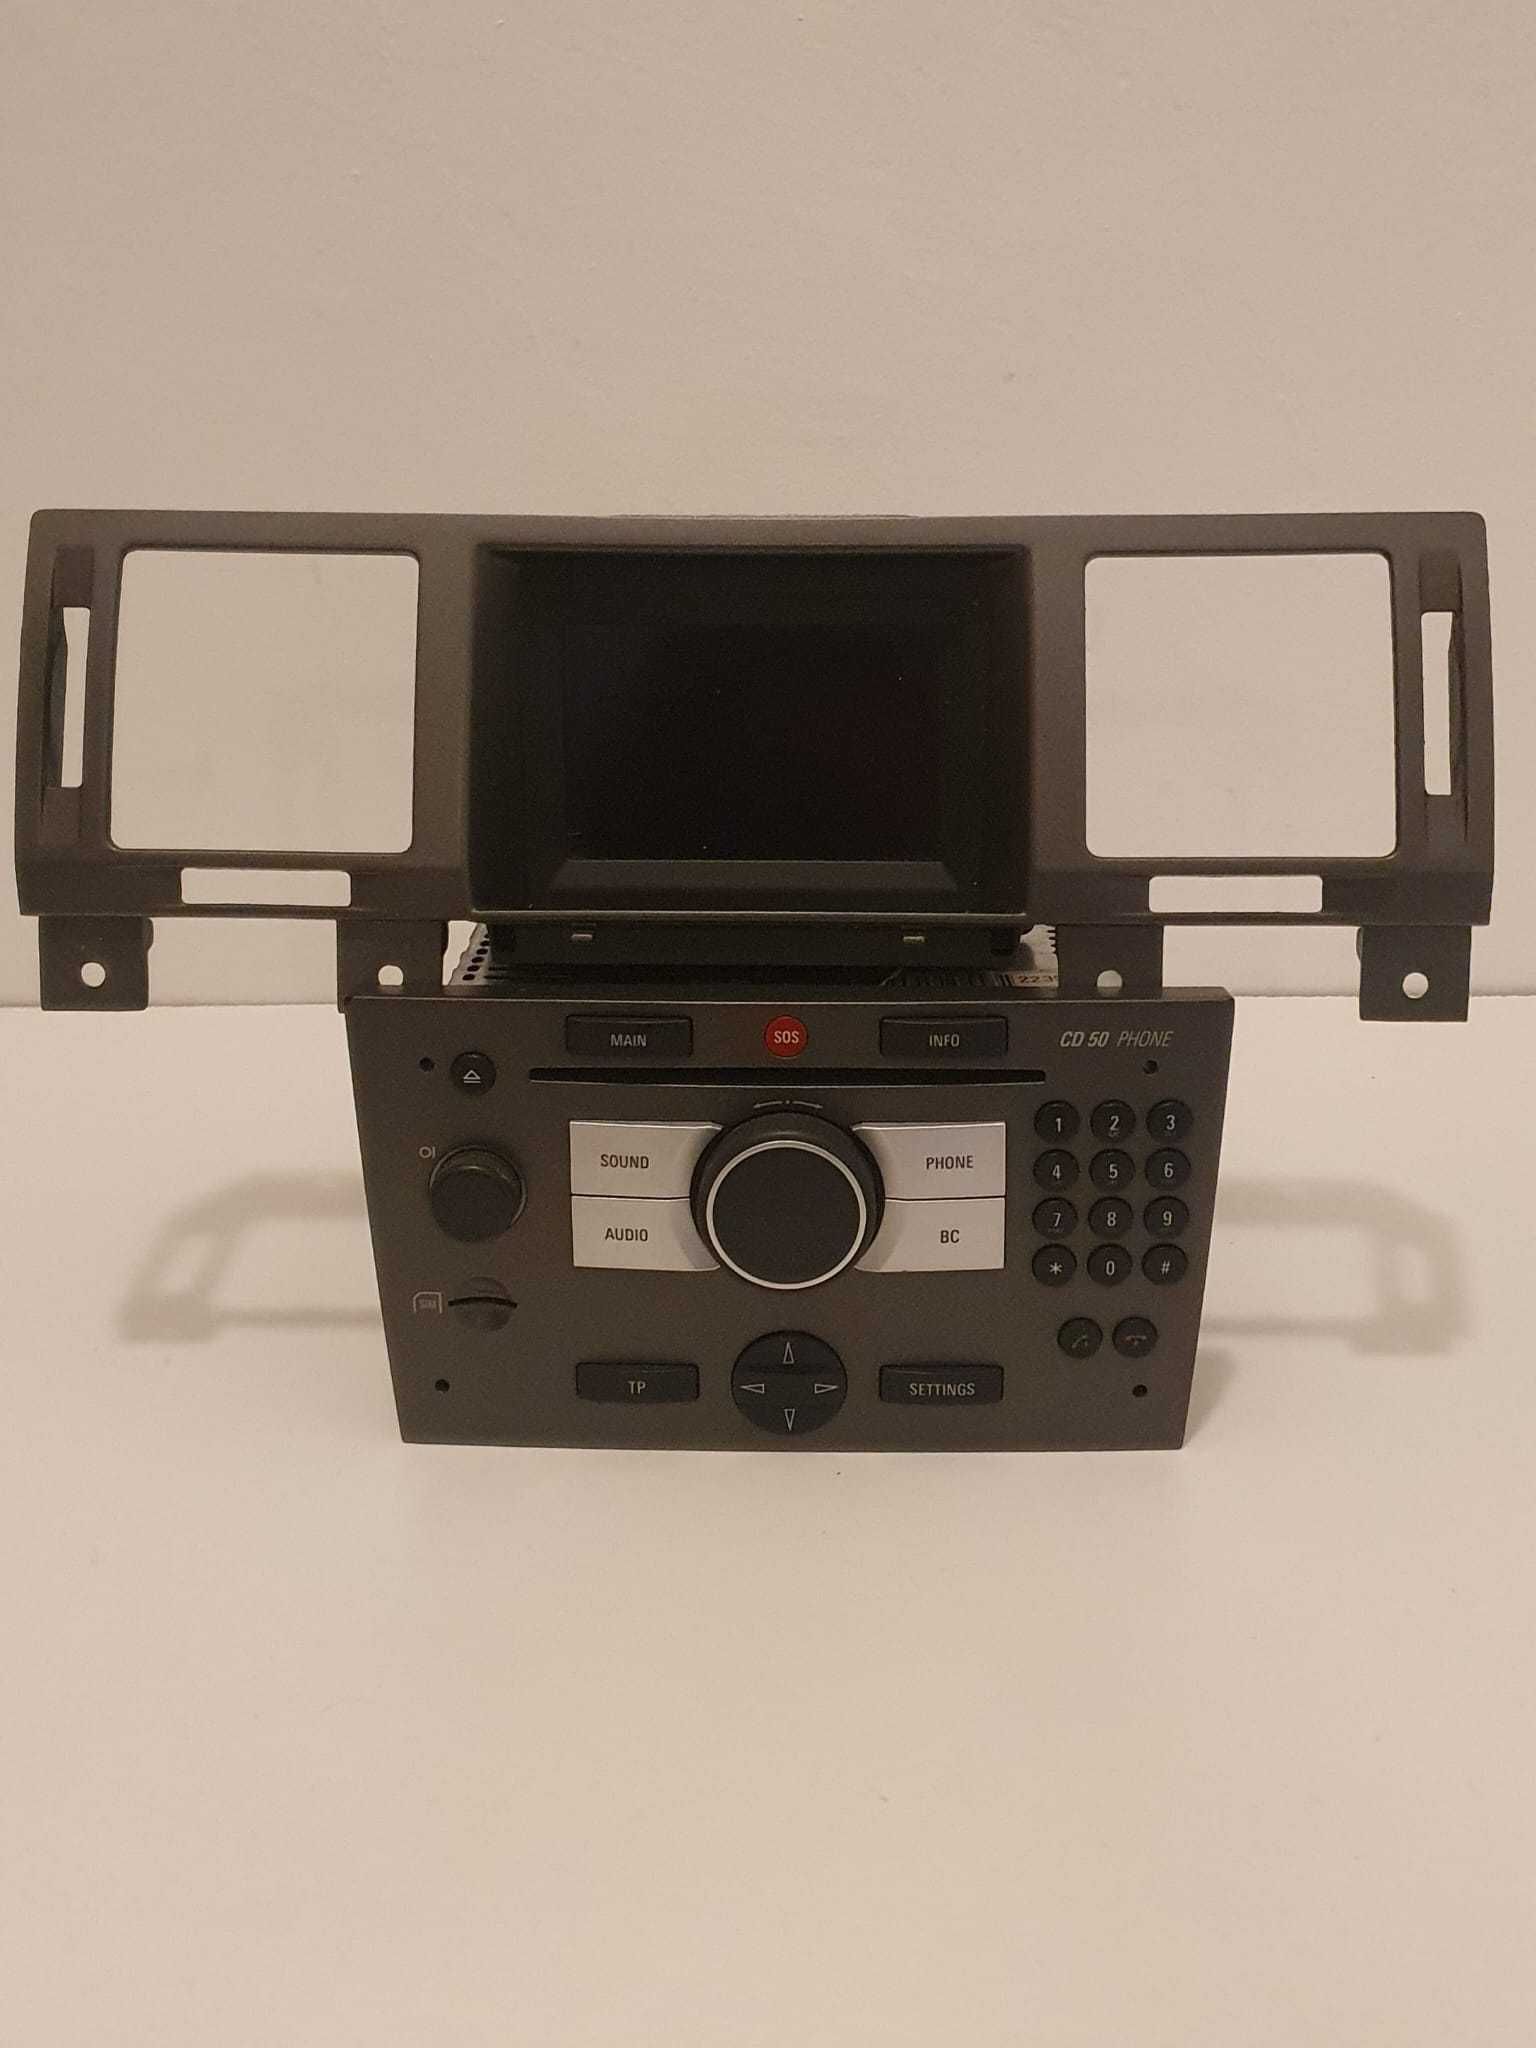 Autorádio e Display CD50 Phone para Vectra C ou Signum, (2002 a 2008)